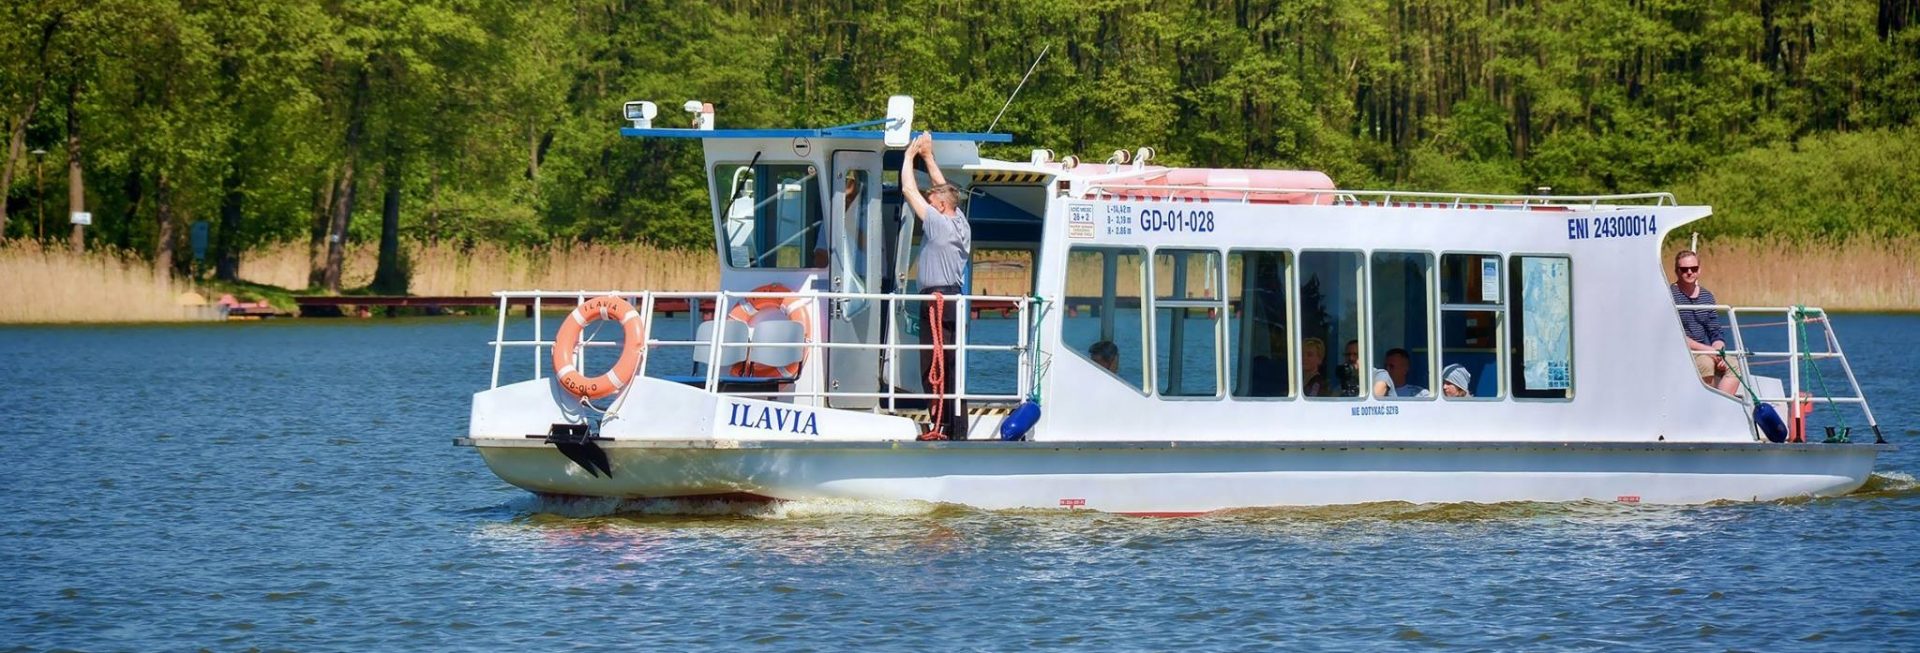 Statek Ilavia z Iławy pływający po jeziorze Jeziorak.   